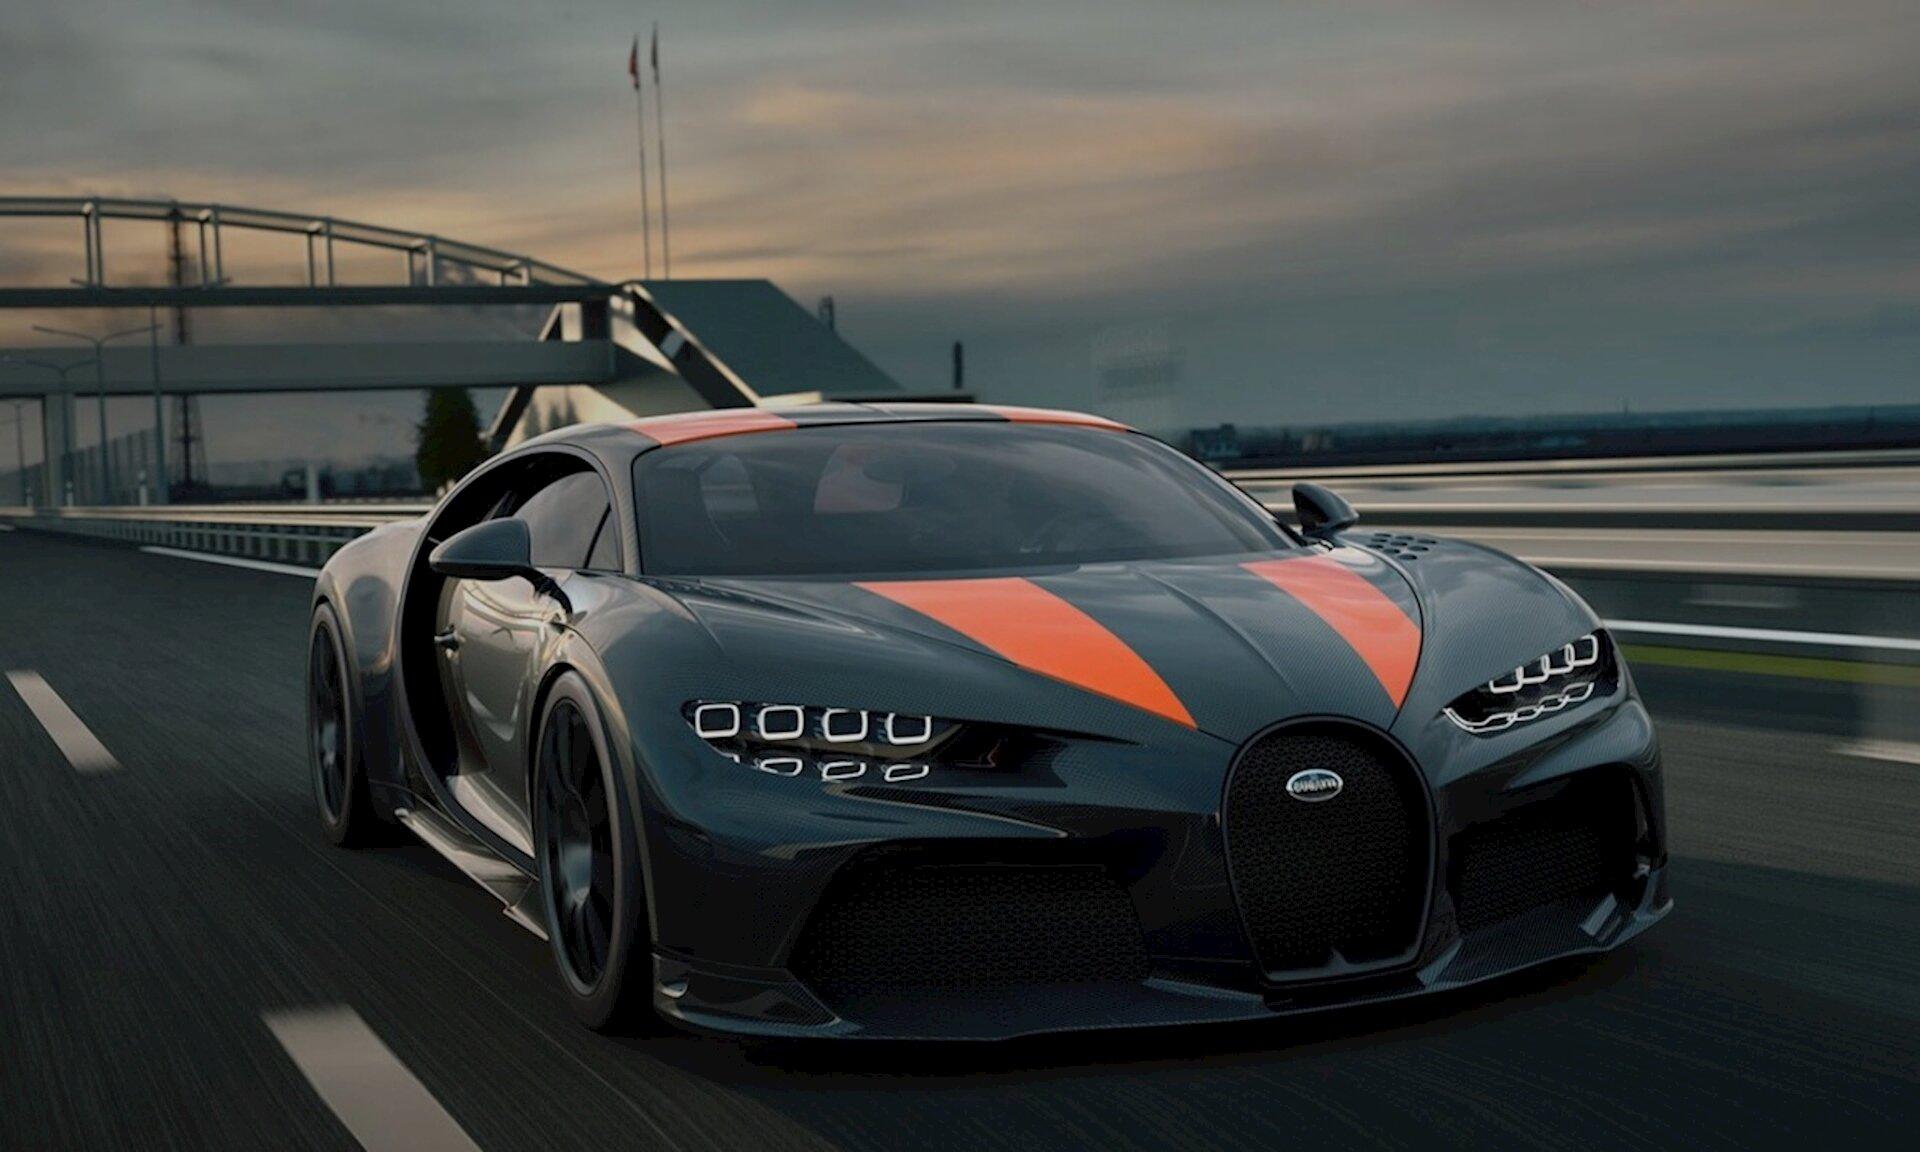 Siêu xe Bugatti Chiron với động cơ mạnh mẽ (Ảnh: Internet)